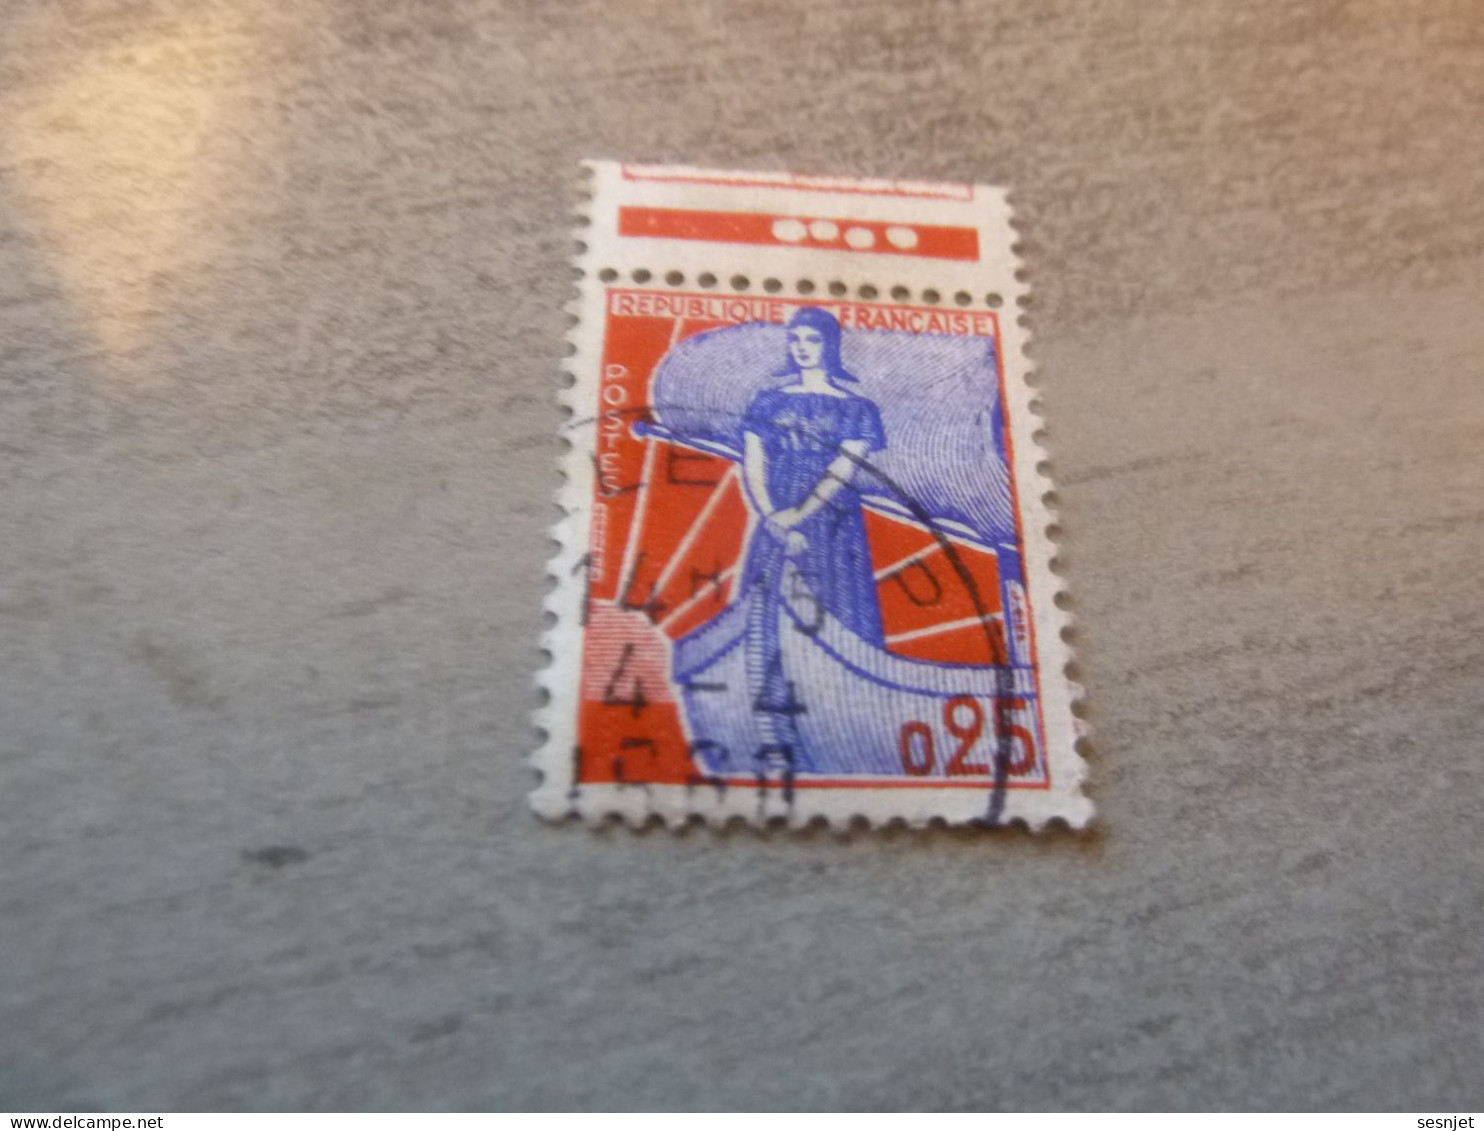 Marianne à La Nef - 25c. - Yt 1234 - Bleu Et Rouge - Bande Oblitéré  - Année 1960 - - 1959-1960 Marianne à La Nef